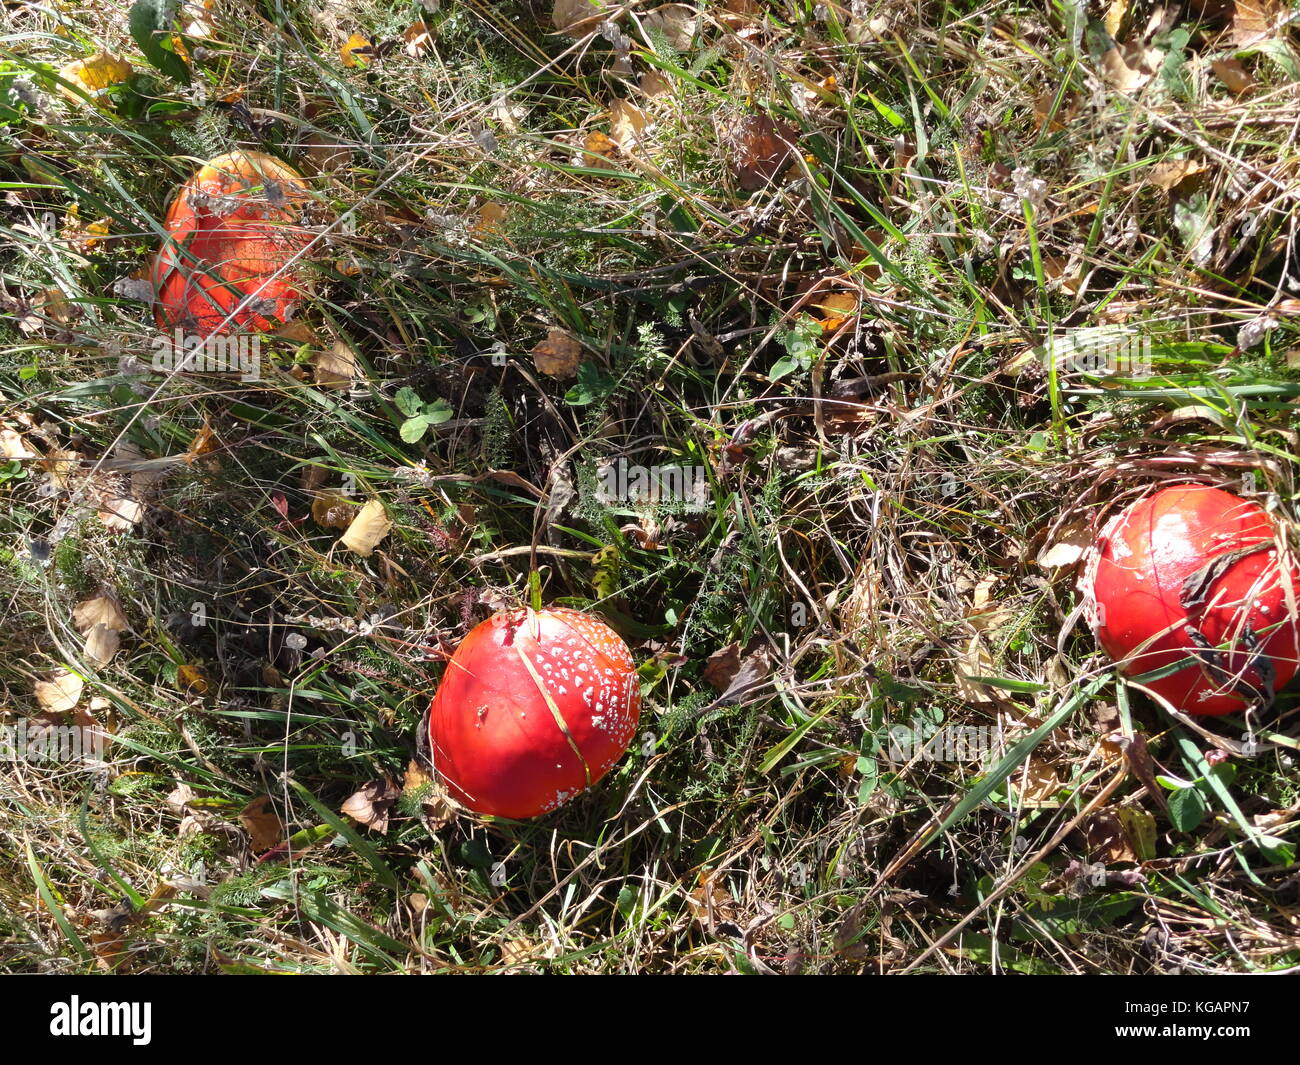 Capture de rares champignons agaric en région montagneuse. Banque D'Images